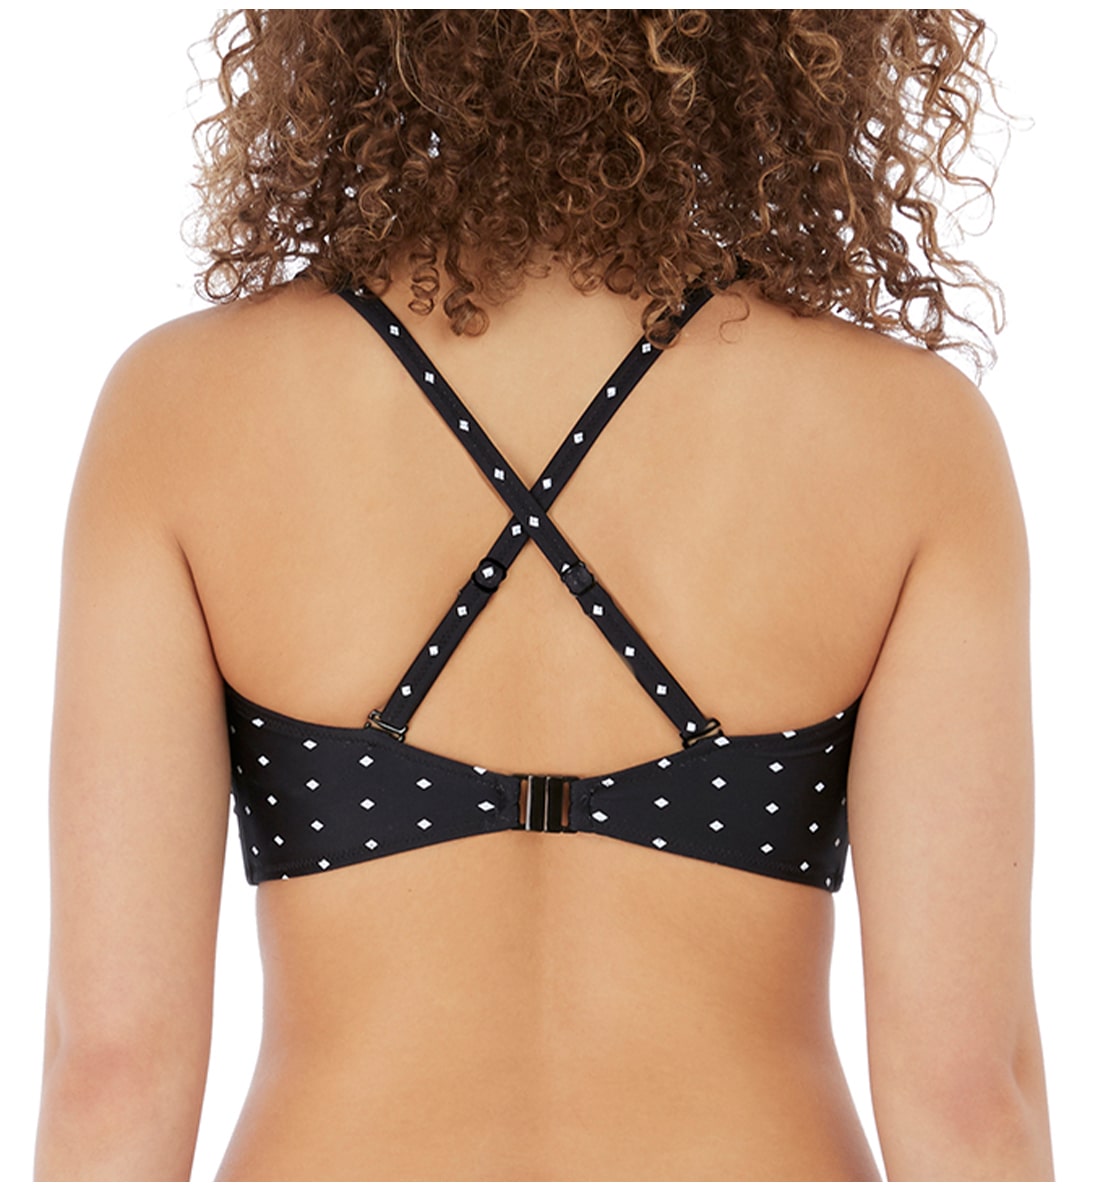 Freya Jewel Cove Convertible Underwire Bralette Bikini Top (7239),30D,Black - Black,30D